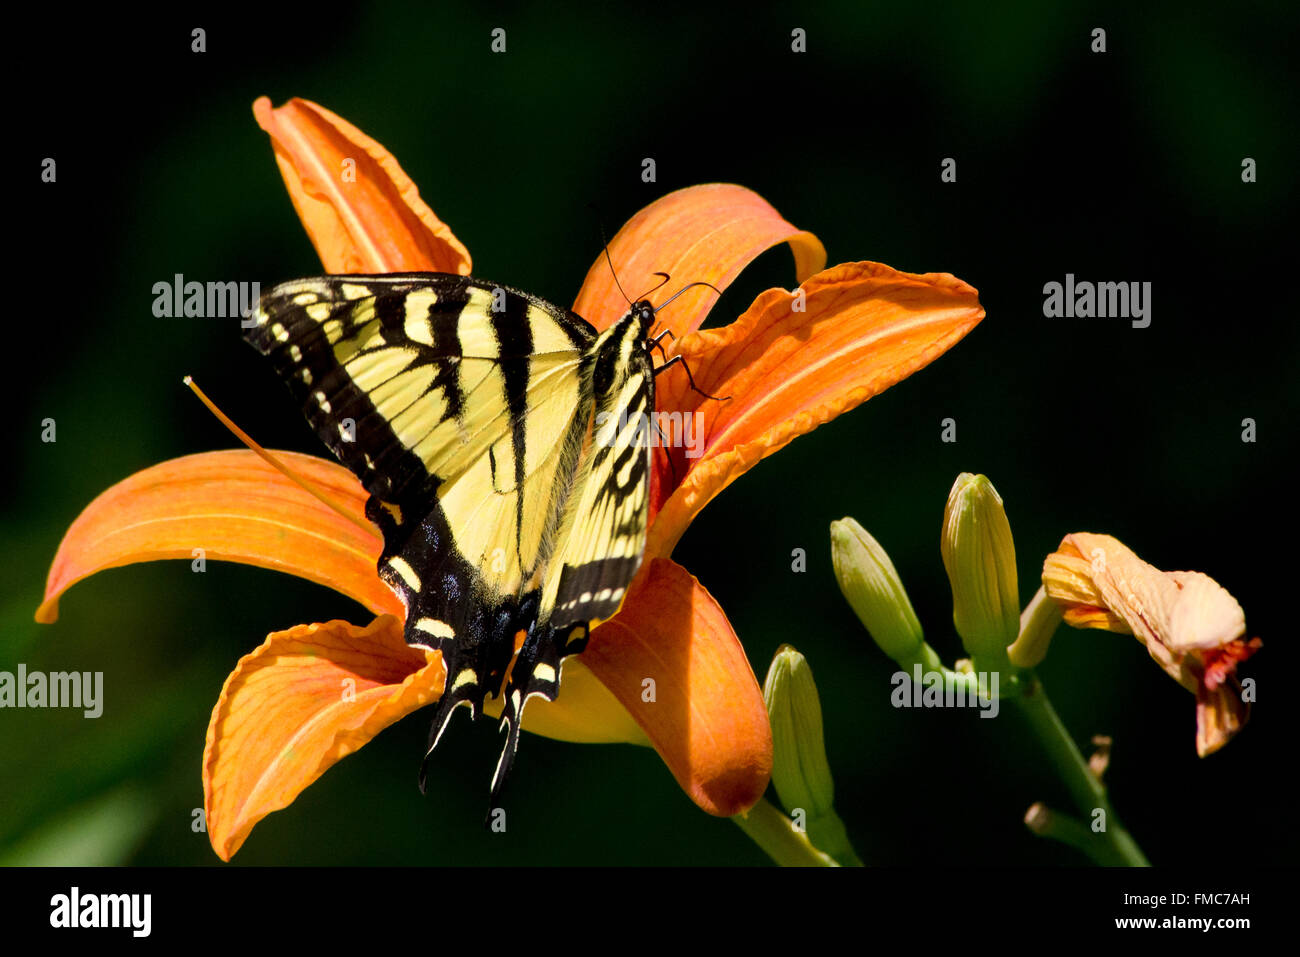 Östliche Tiger Schwalbenschwanz Schmetterling Flügel öffnen Fütterung auf eine orange Lilie Blume im Sommer Garten Lebensraum. Stockfoto